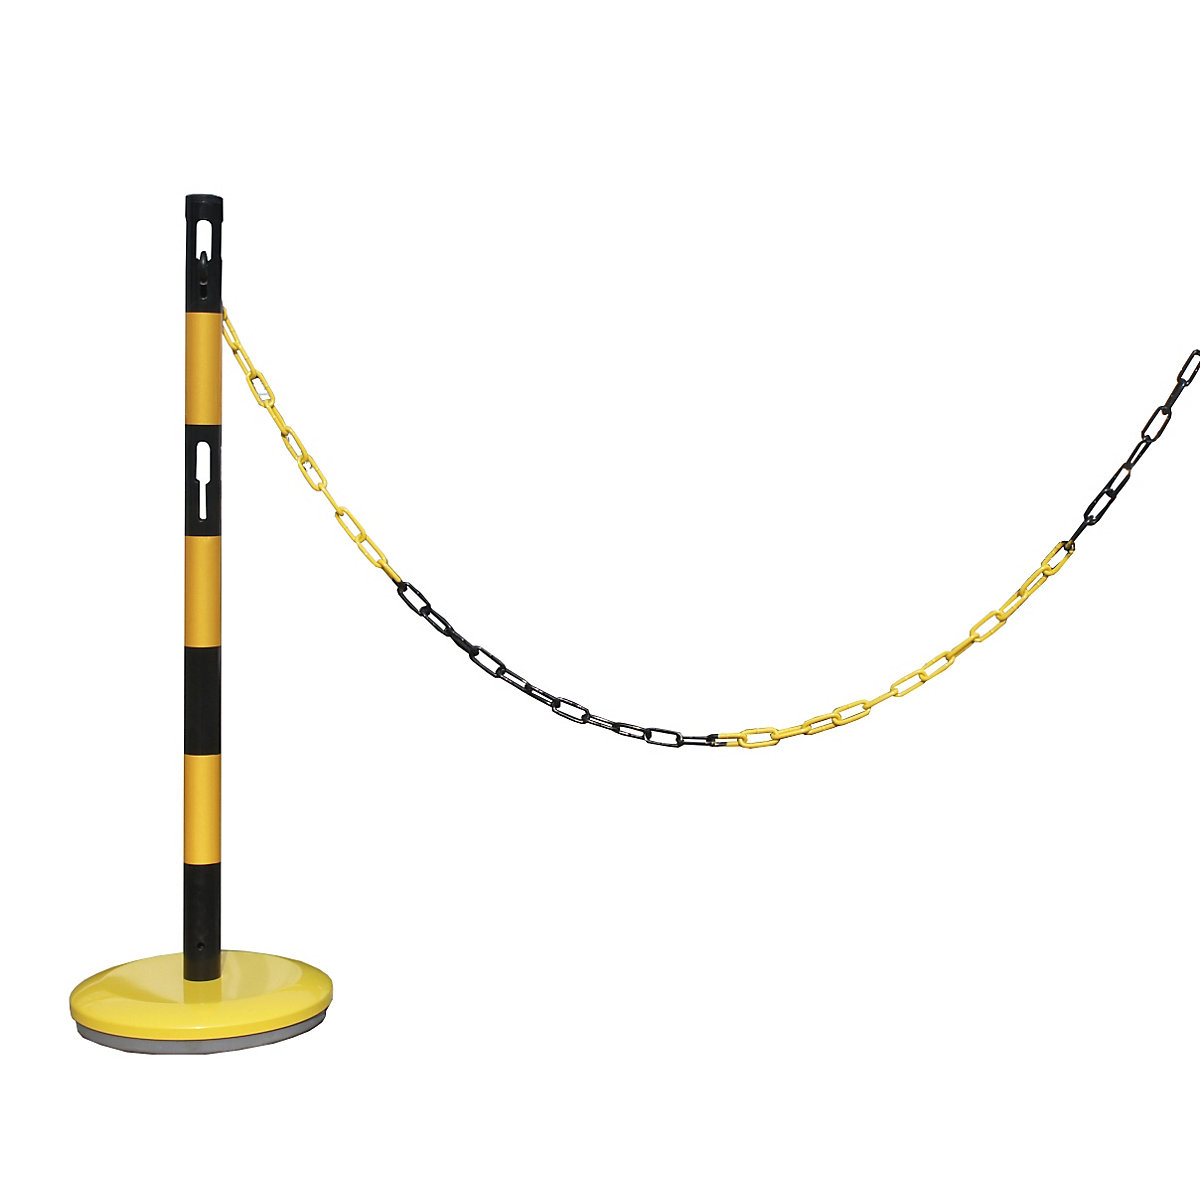 Zestaw do montażu słupków odgradzających z łańcuchem – VISO, 1 słupek, łańcuch 2,5 m, żółty / czarny-3